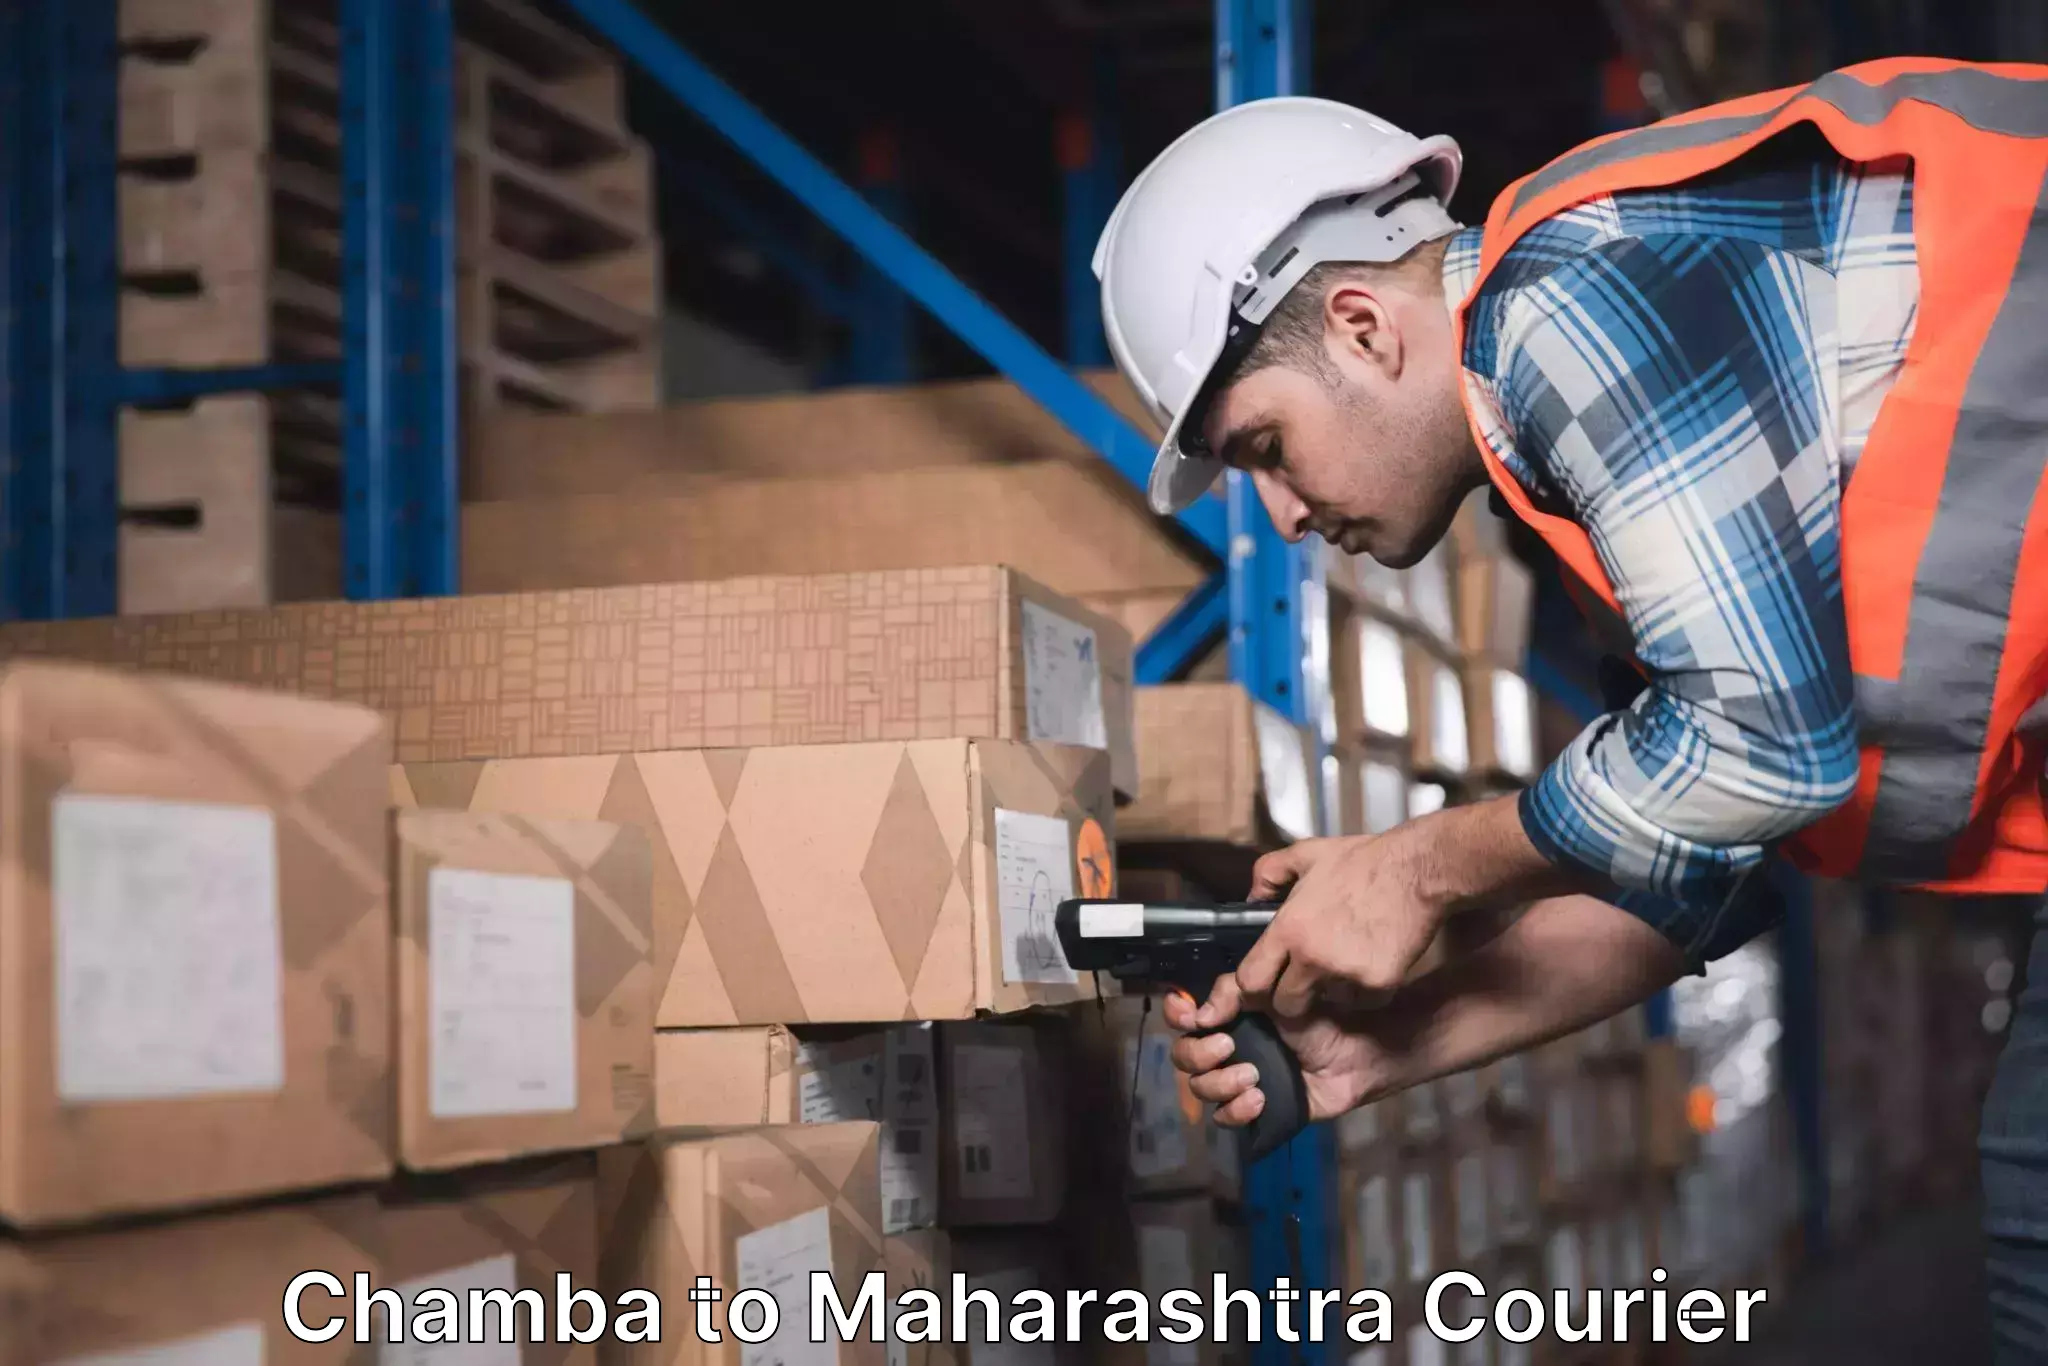 User-friendly delivery service Chamba to Maharashtra